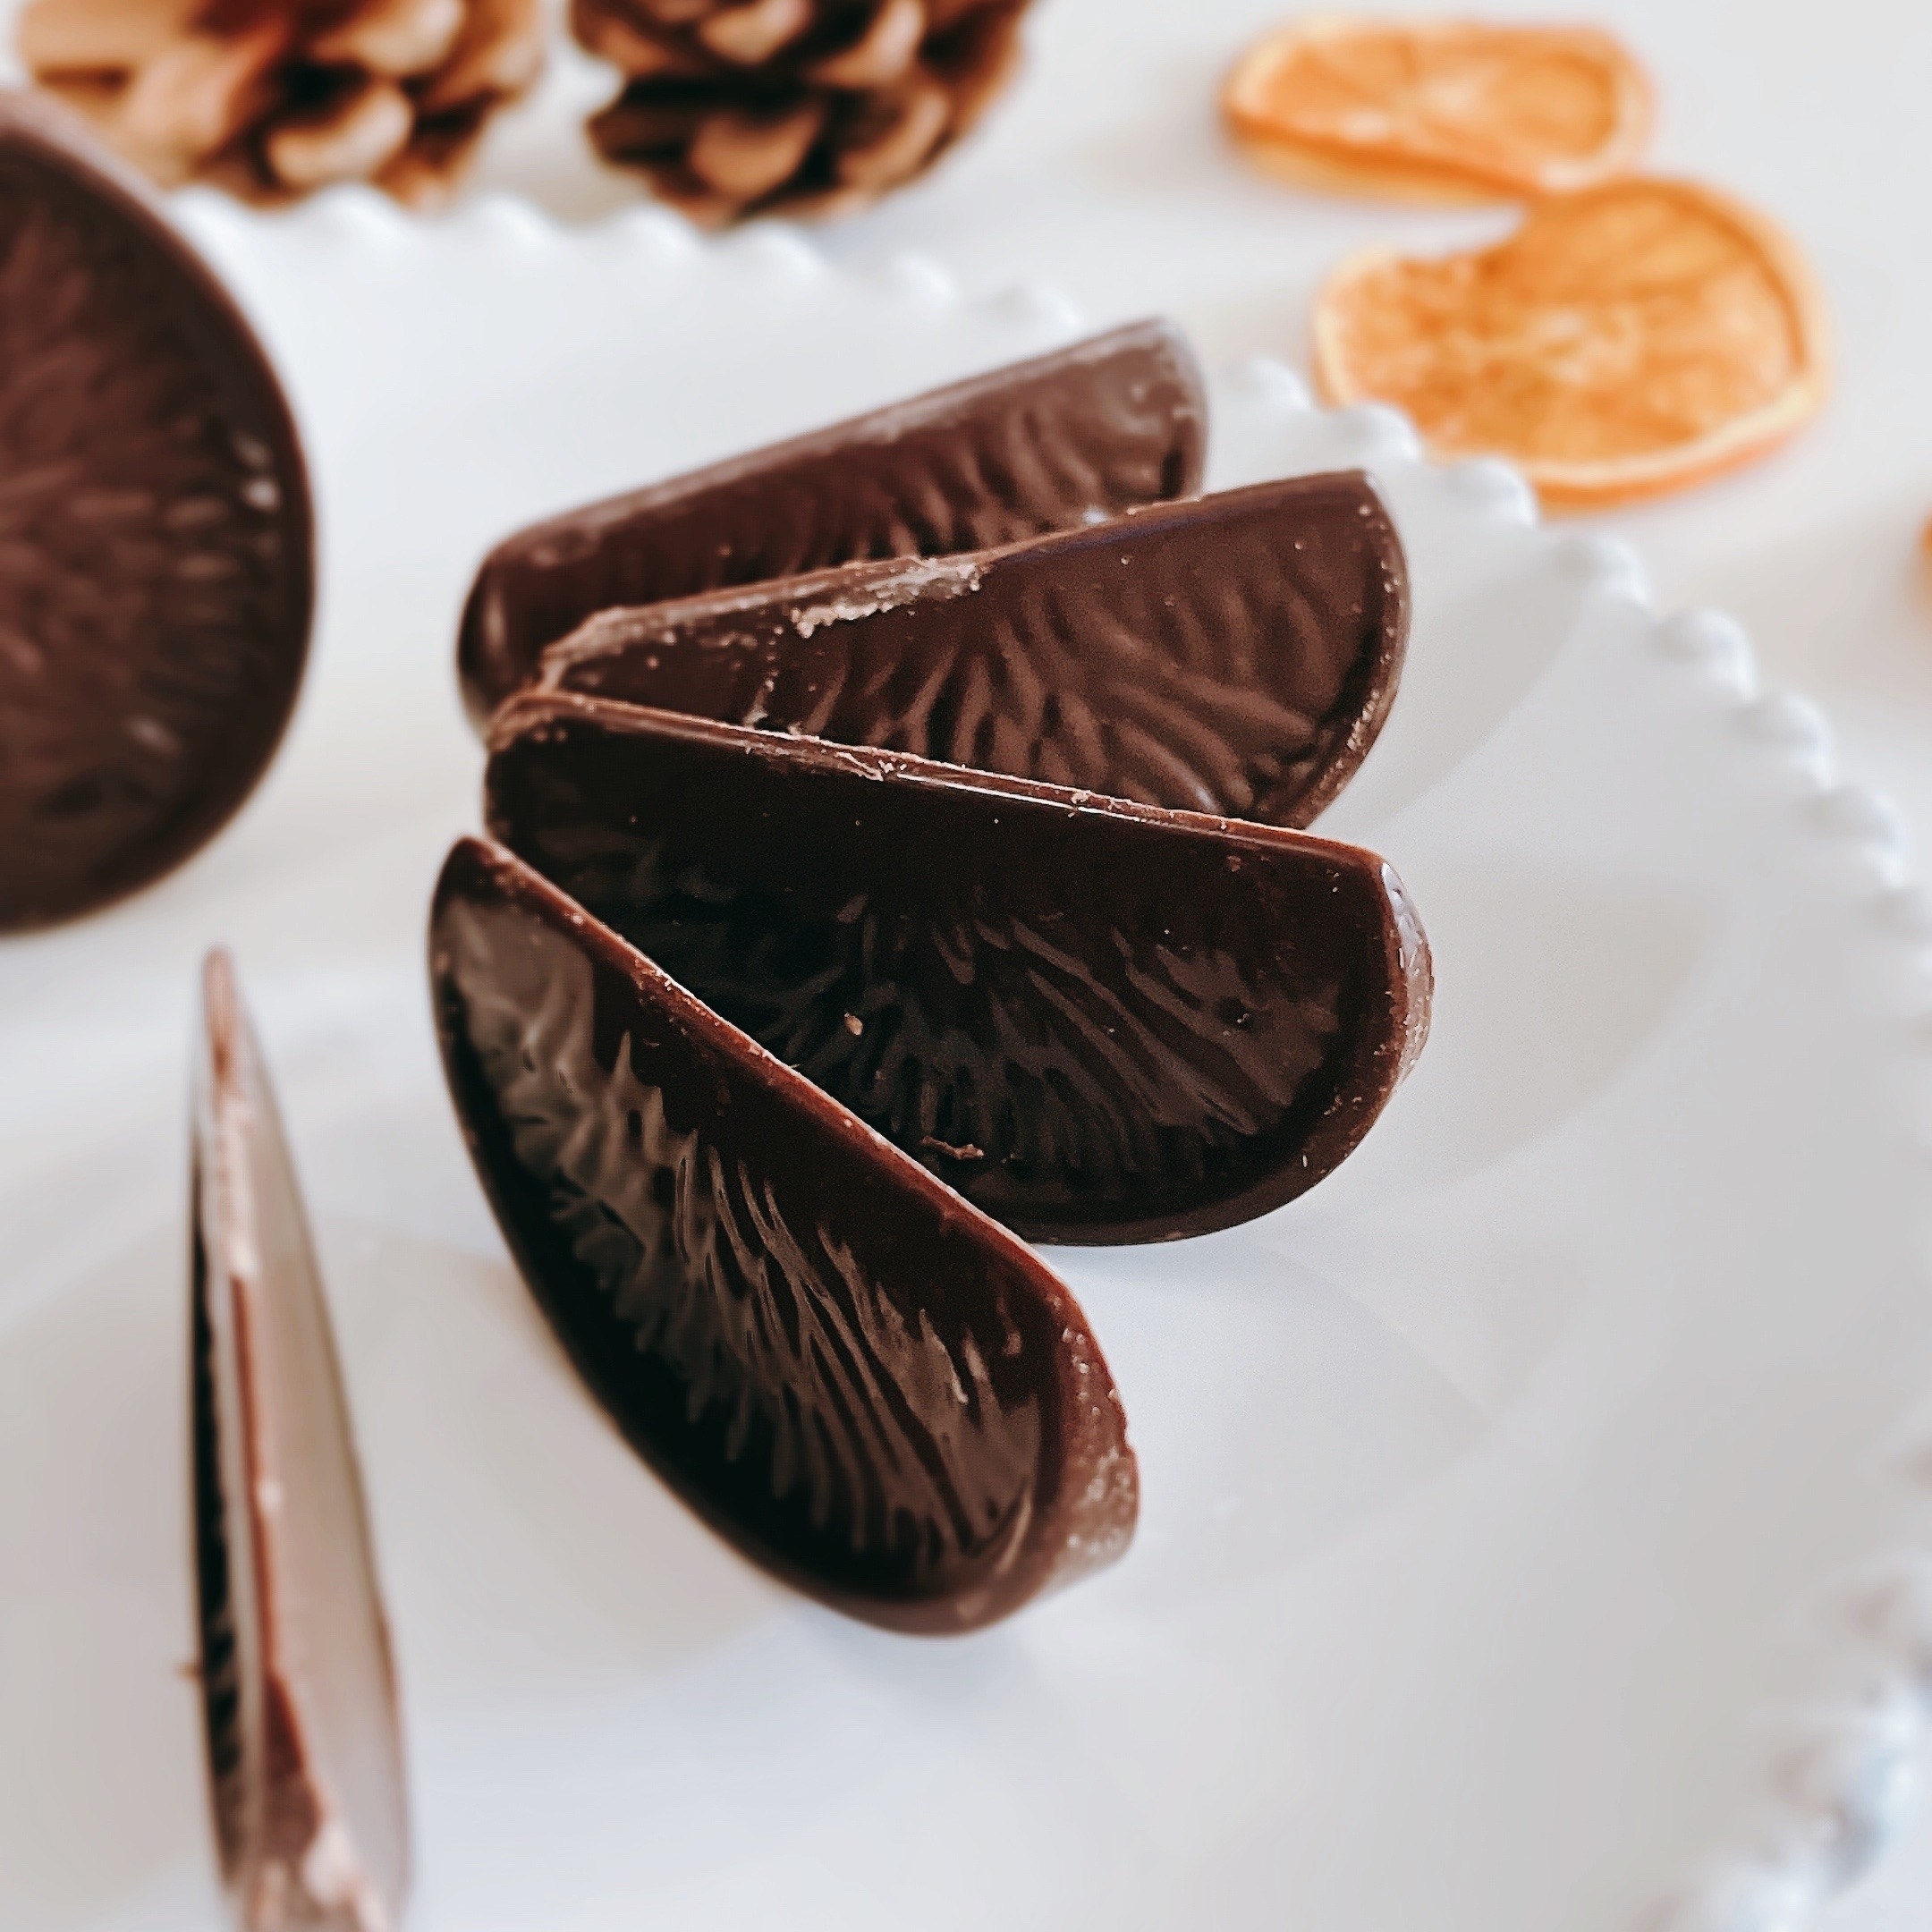 KALDI（カルディ）のおすすめのお菓子「テリーズ チョコレート オレンジダーク」